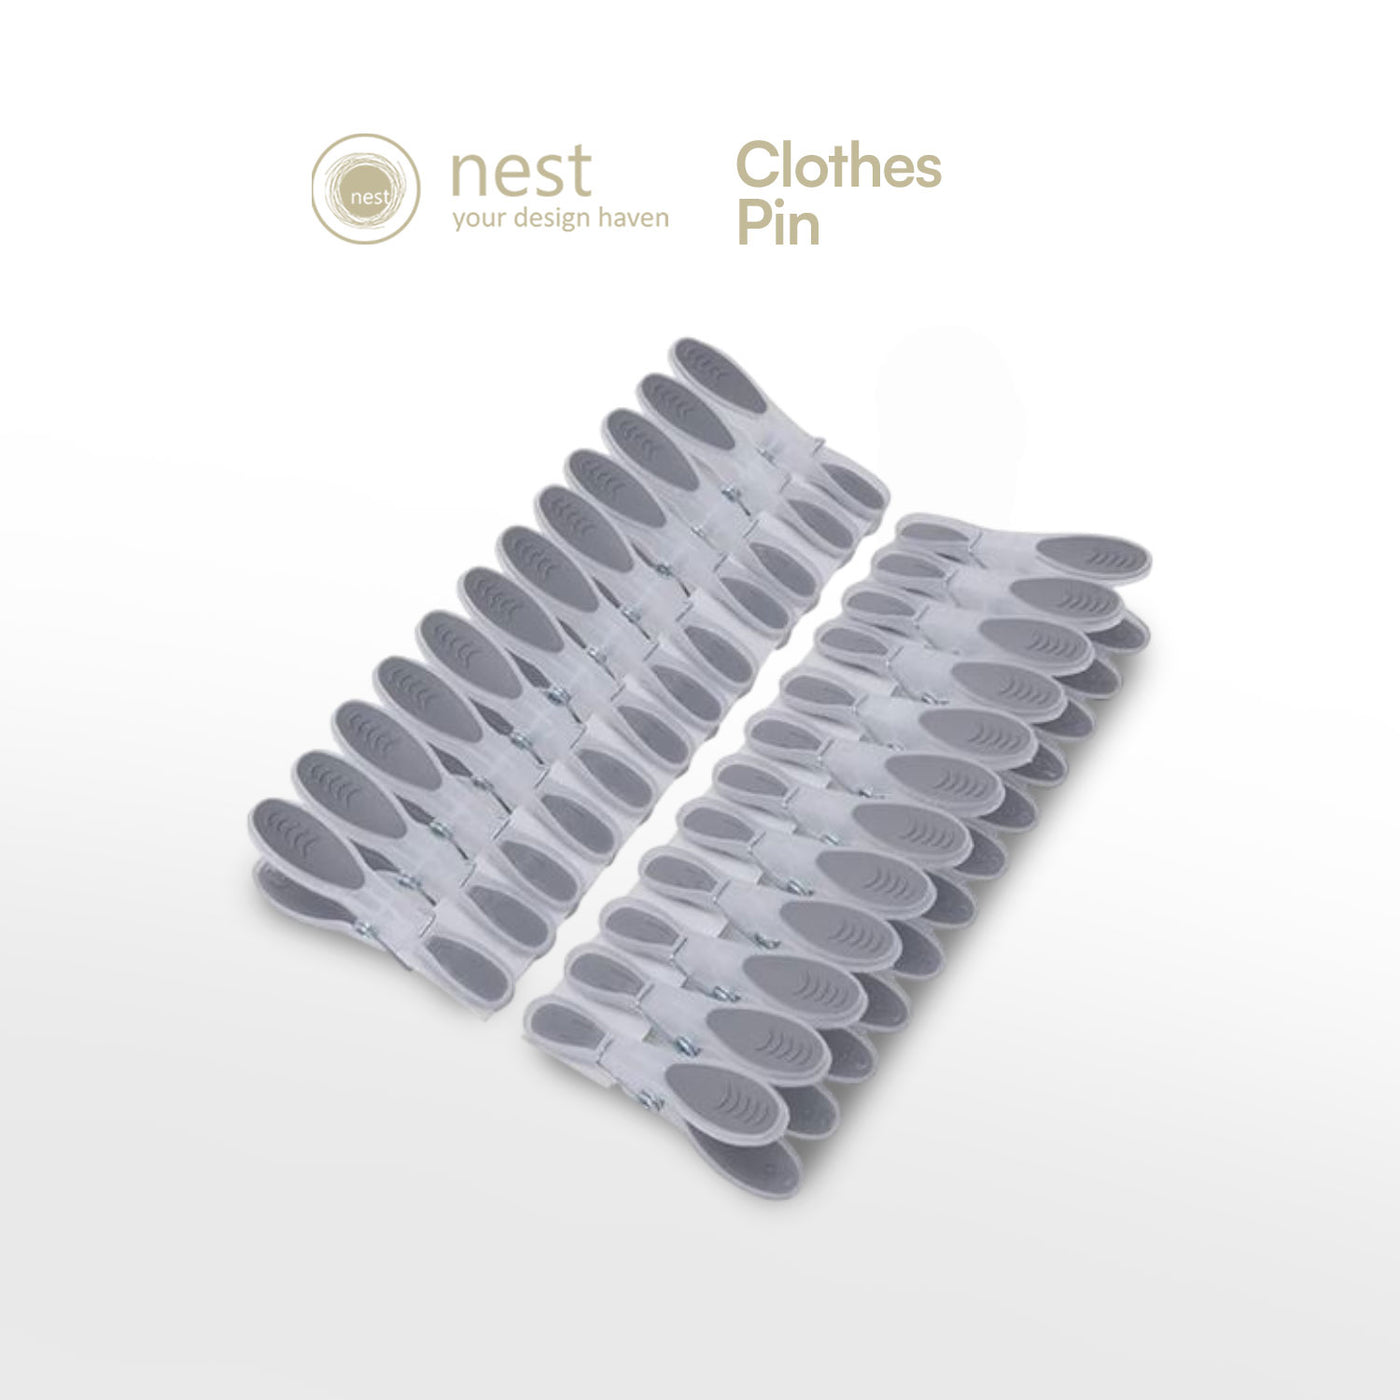 NEST DESIGN LAB Premium Clothes Pin Set of 24